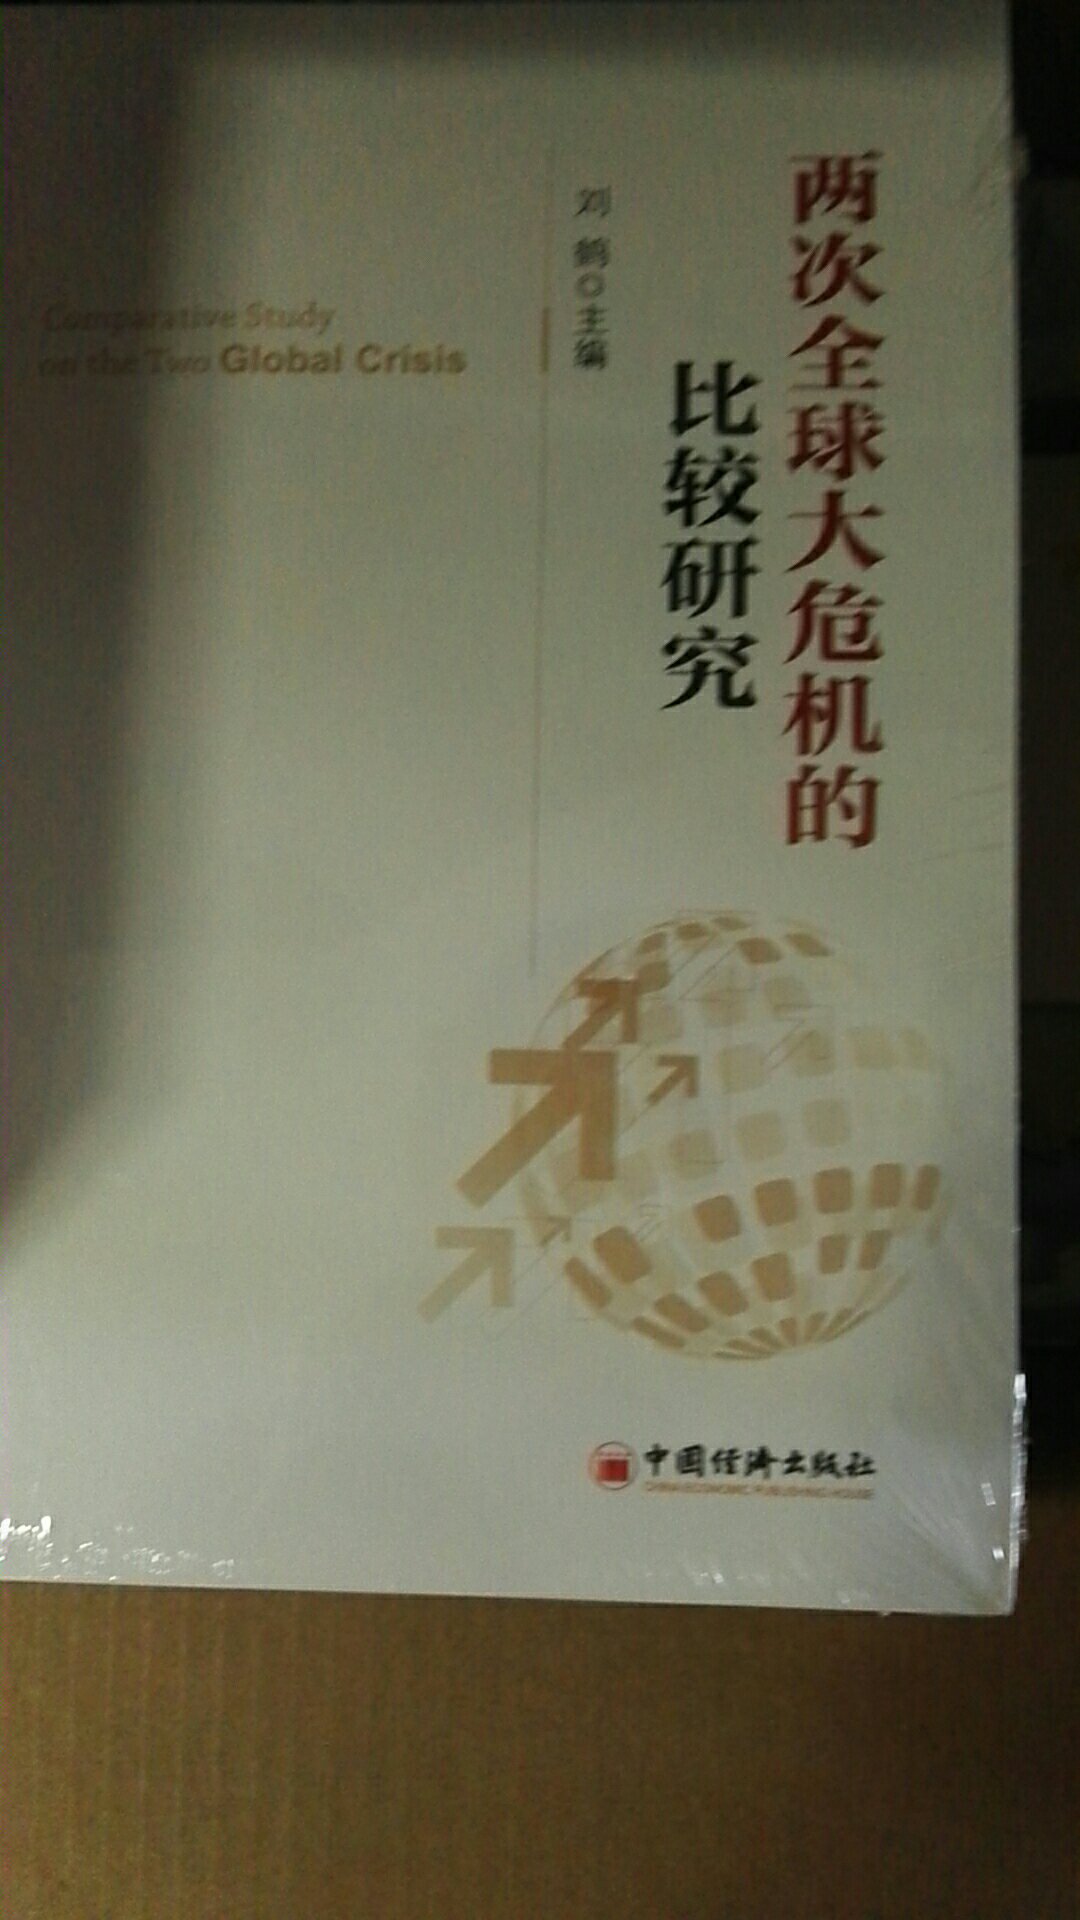 听知本家智库首席经济学家吴坤岭博士的课，推荐了这本书。买回来，扫盲。